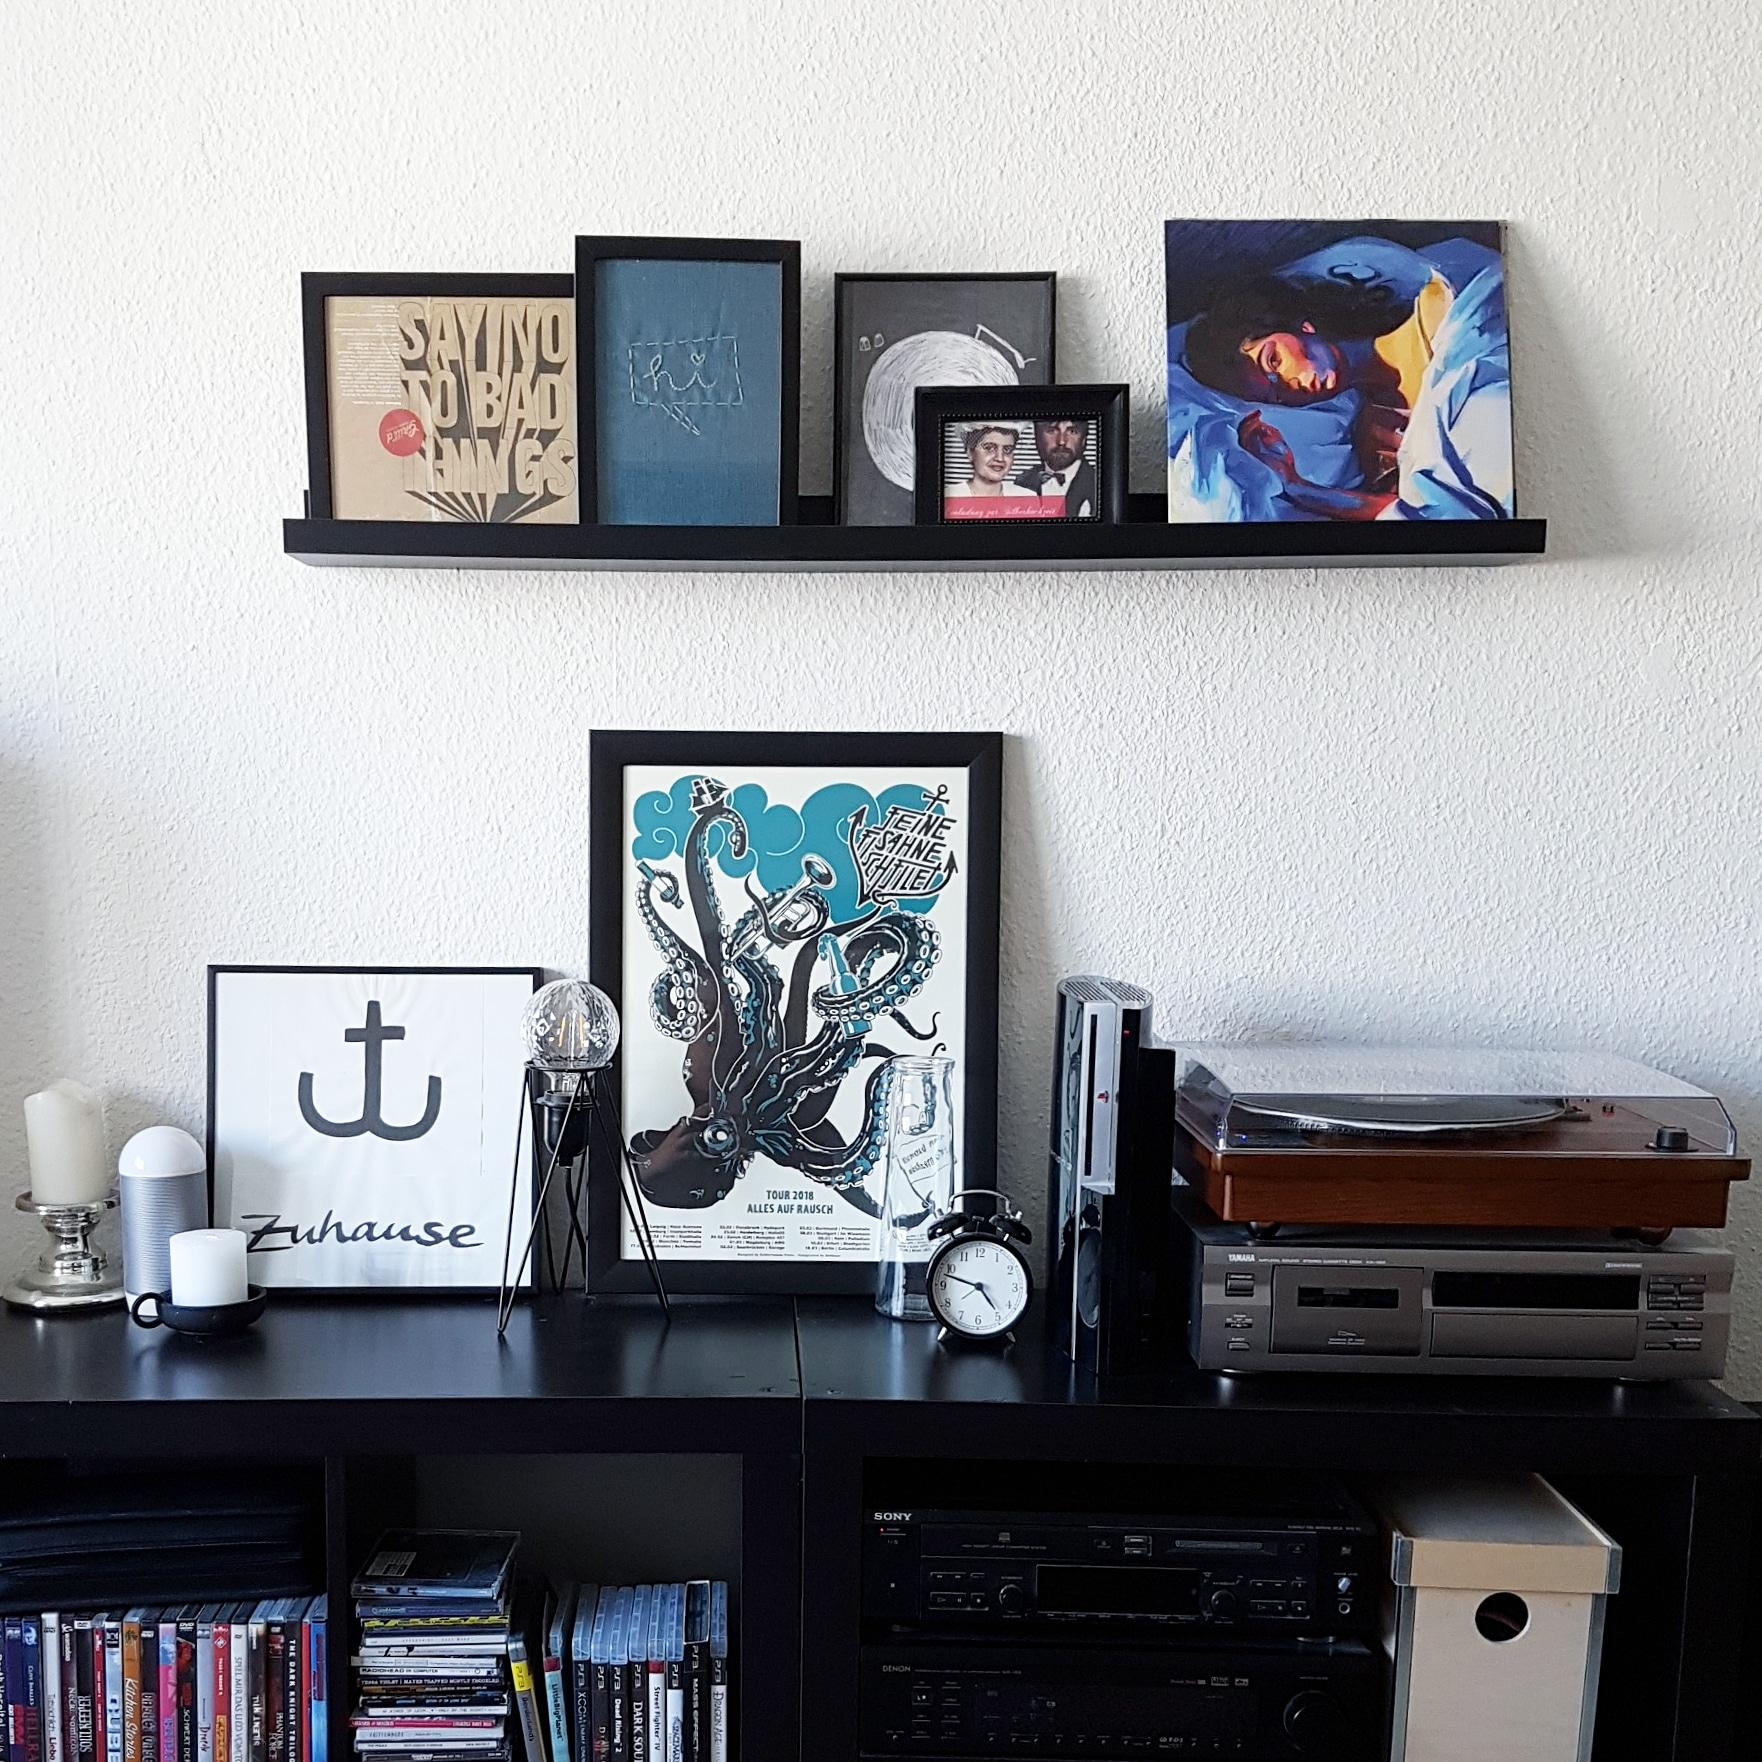 Vinyl, Kunst und Erinnerungsstücke dürfen einfach nicht fehlen. #couchliebt #vinyl #plattenspieler #wohnzimmer #interior